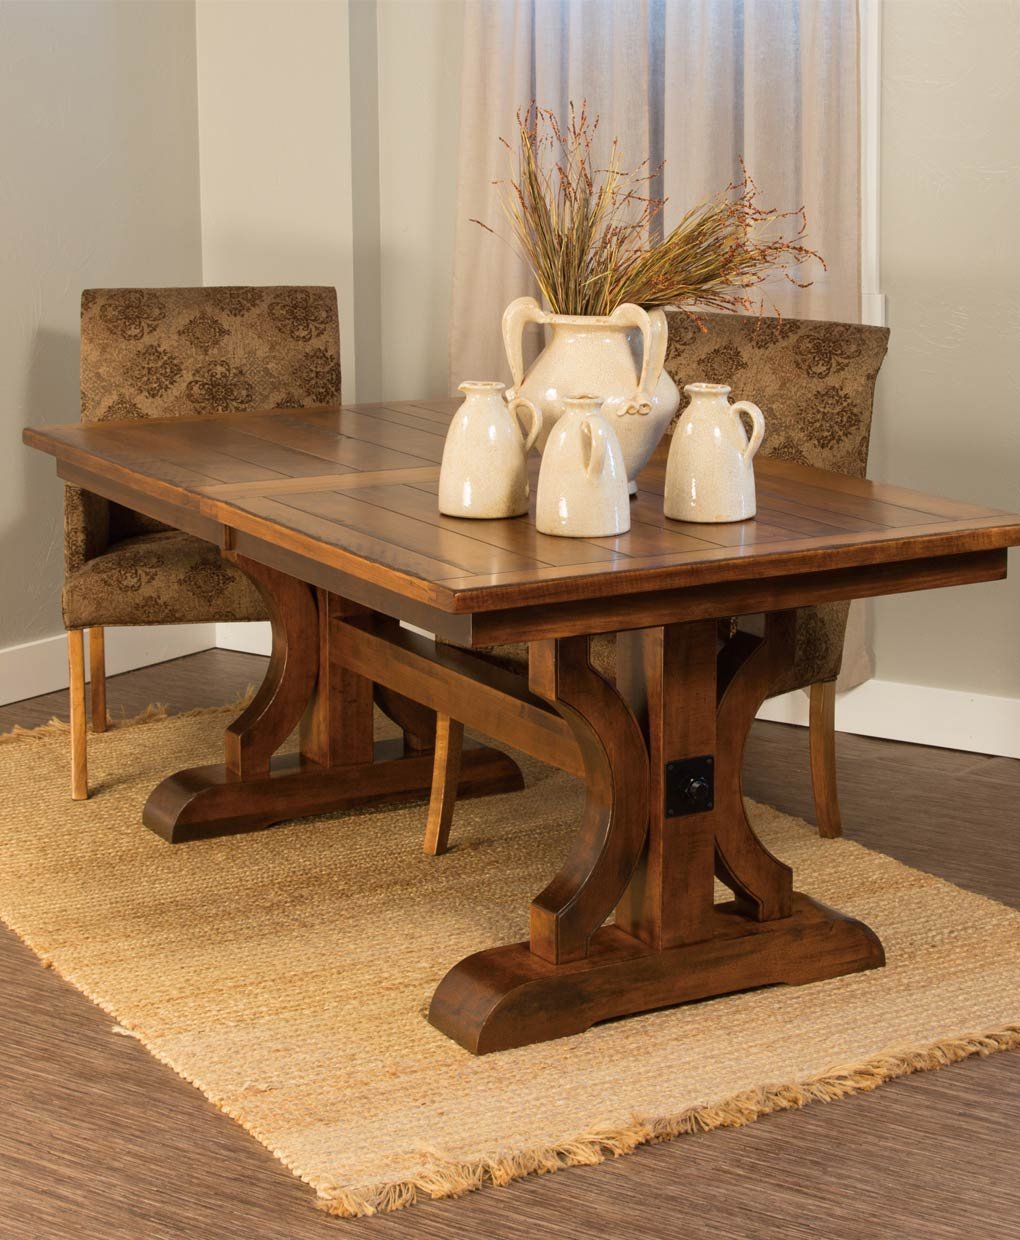 Стол обеденный из массива дерева bestkaminy ru. Обеденный стол Orlando Wood Table. Деревянный столик. Красивая деревянная мебель. Столик из дерева.